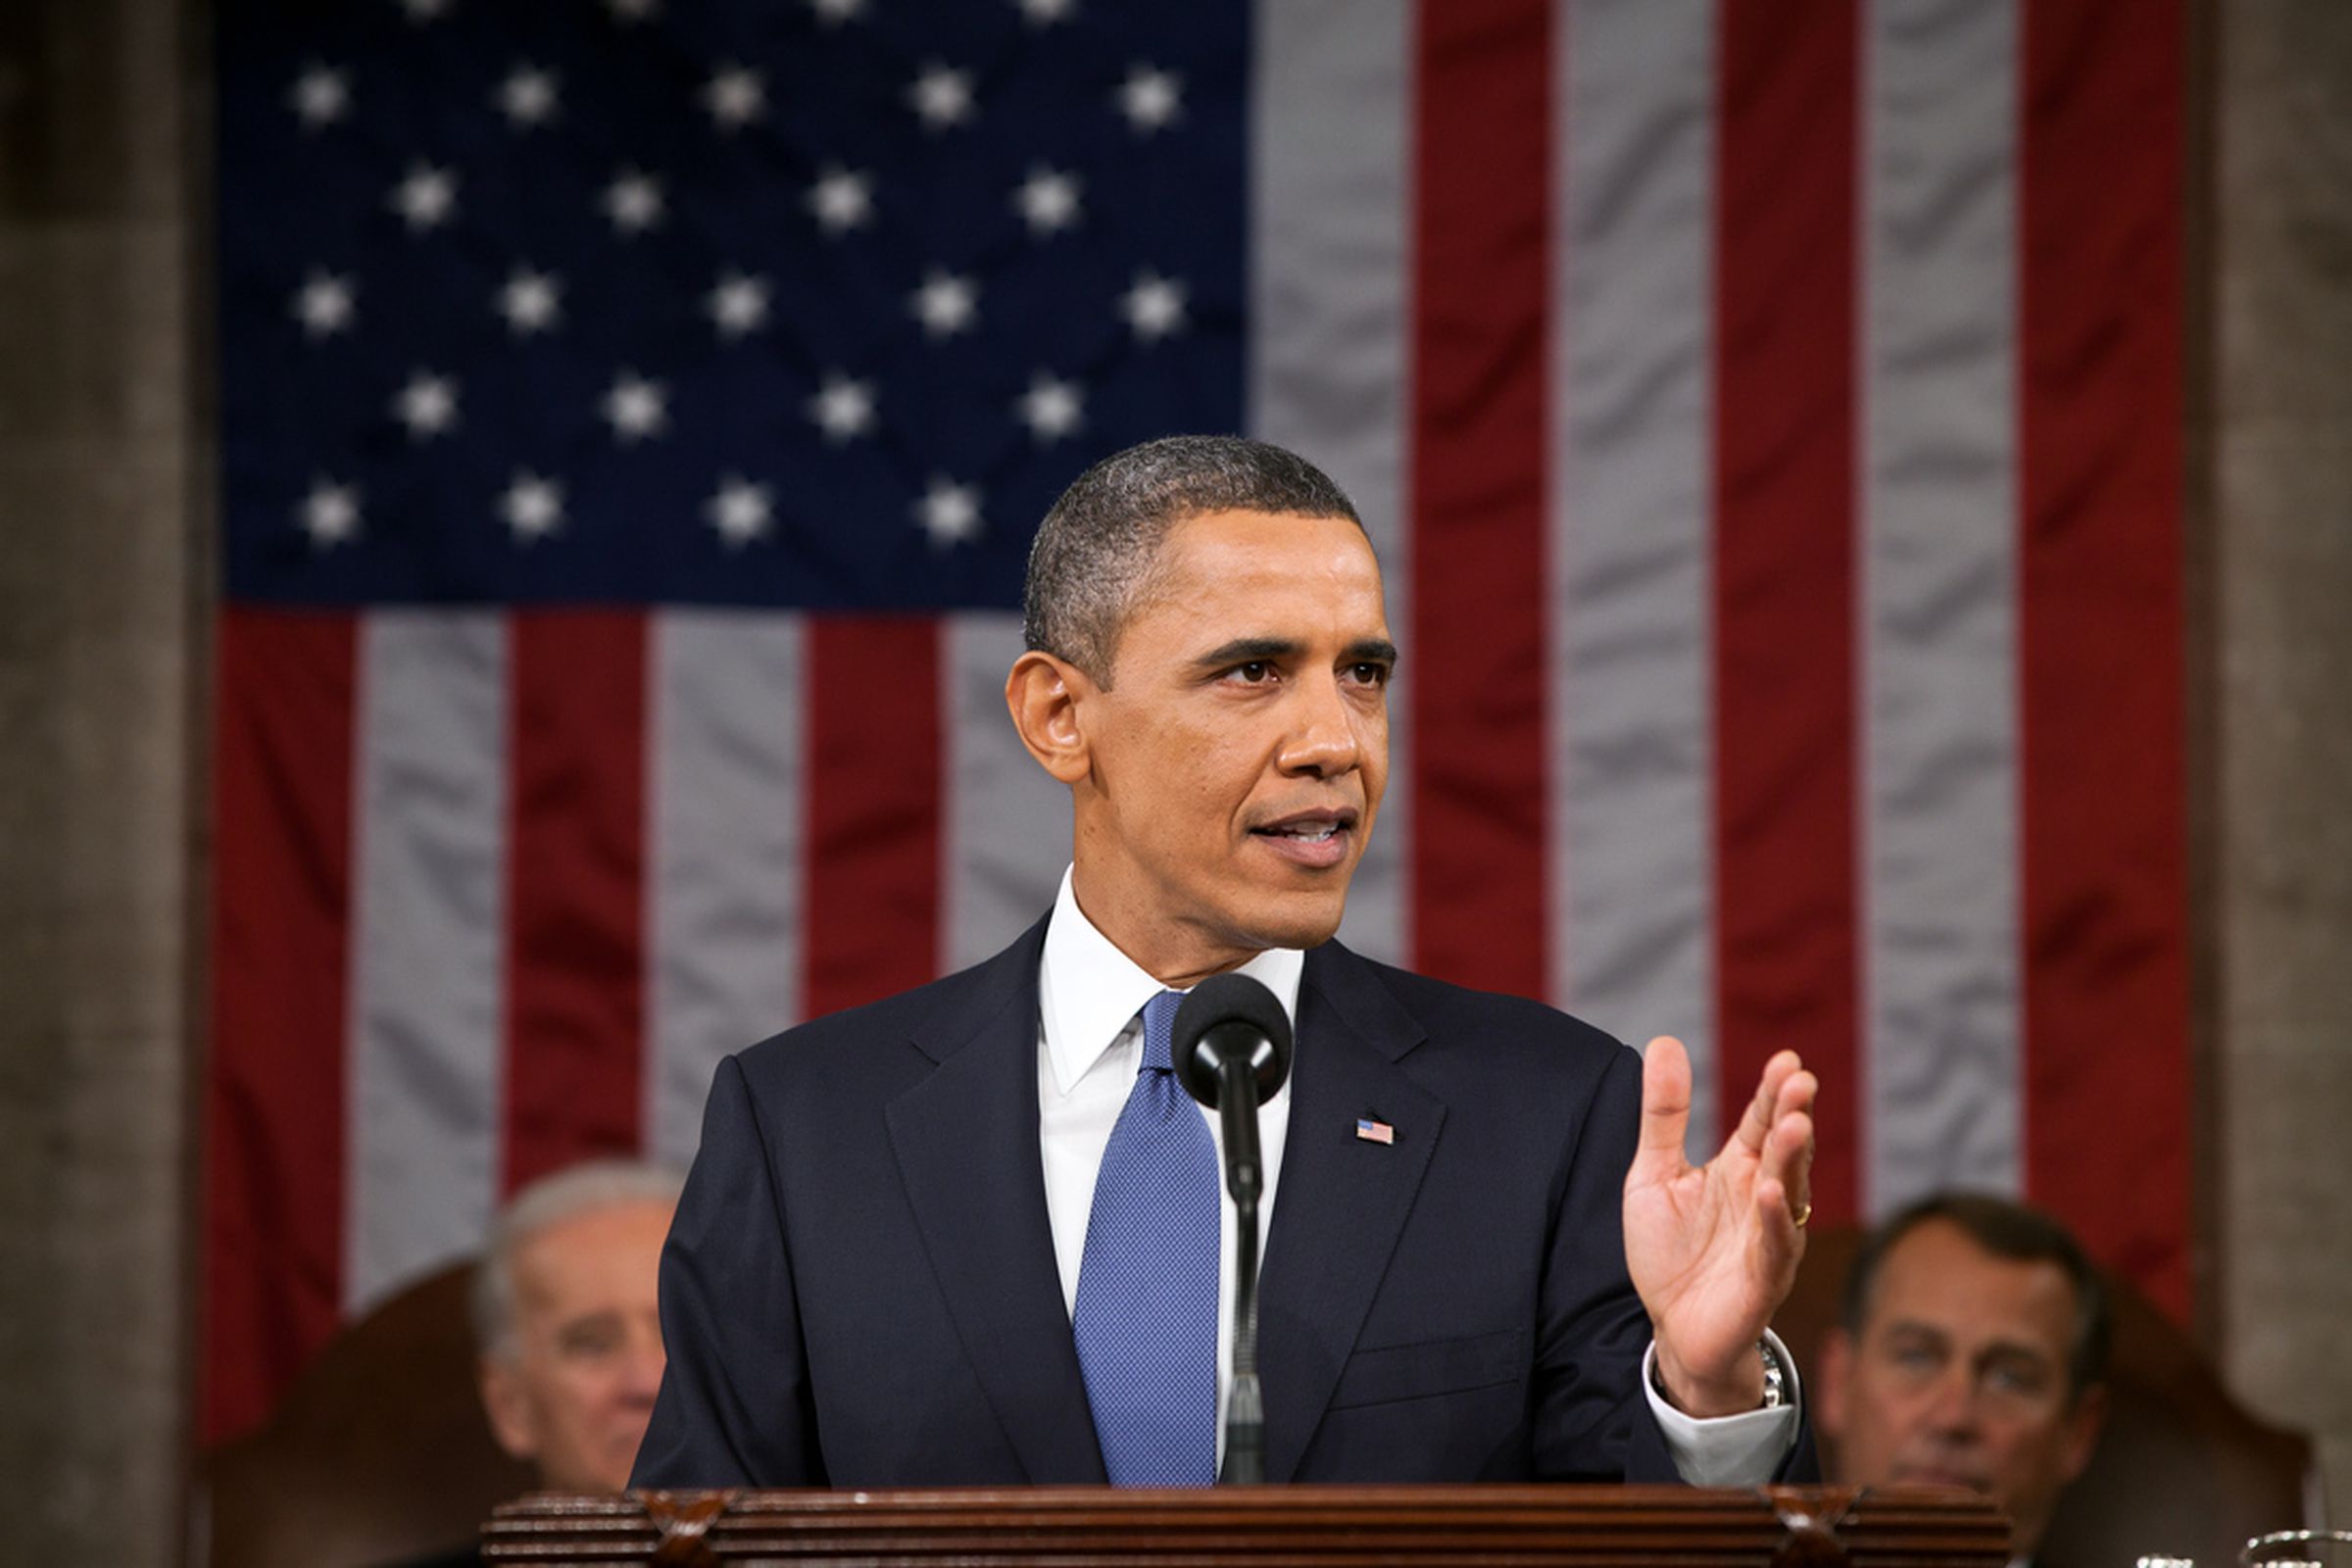 obama speech pete souza white house flickr stock